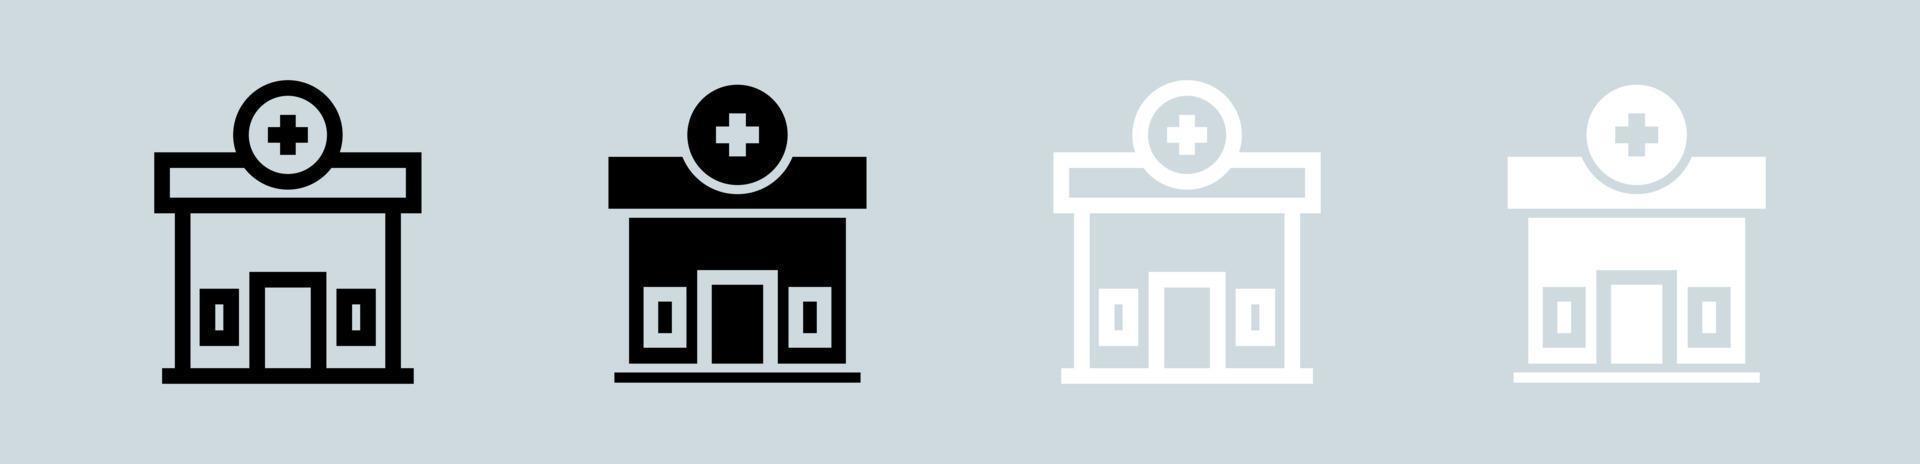 sjukhus ikon uppsättning i svart och vit. klinik tecken vektor illustration.